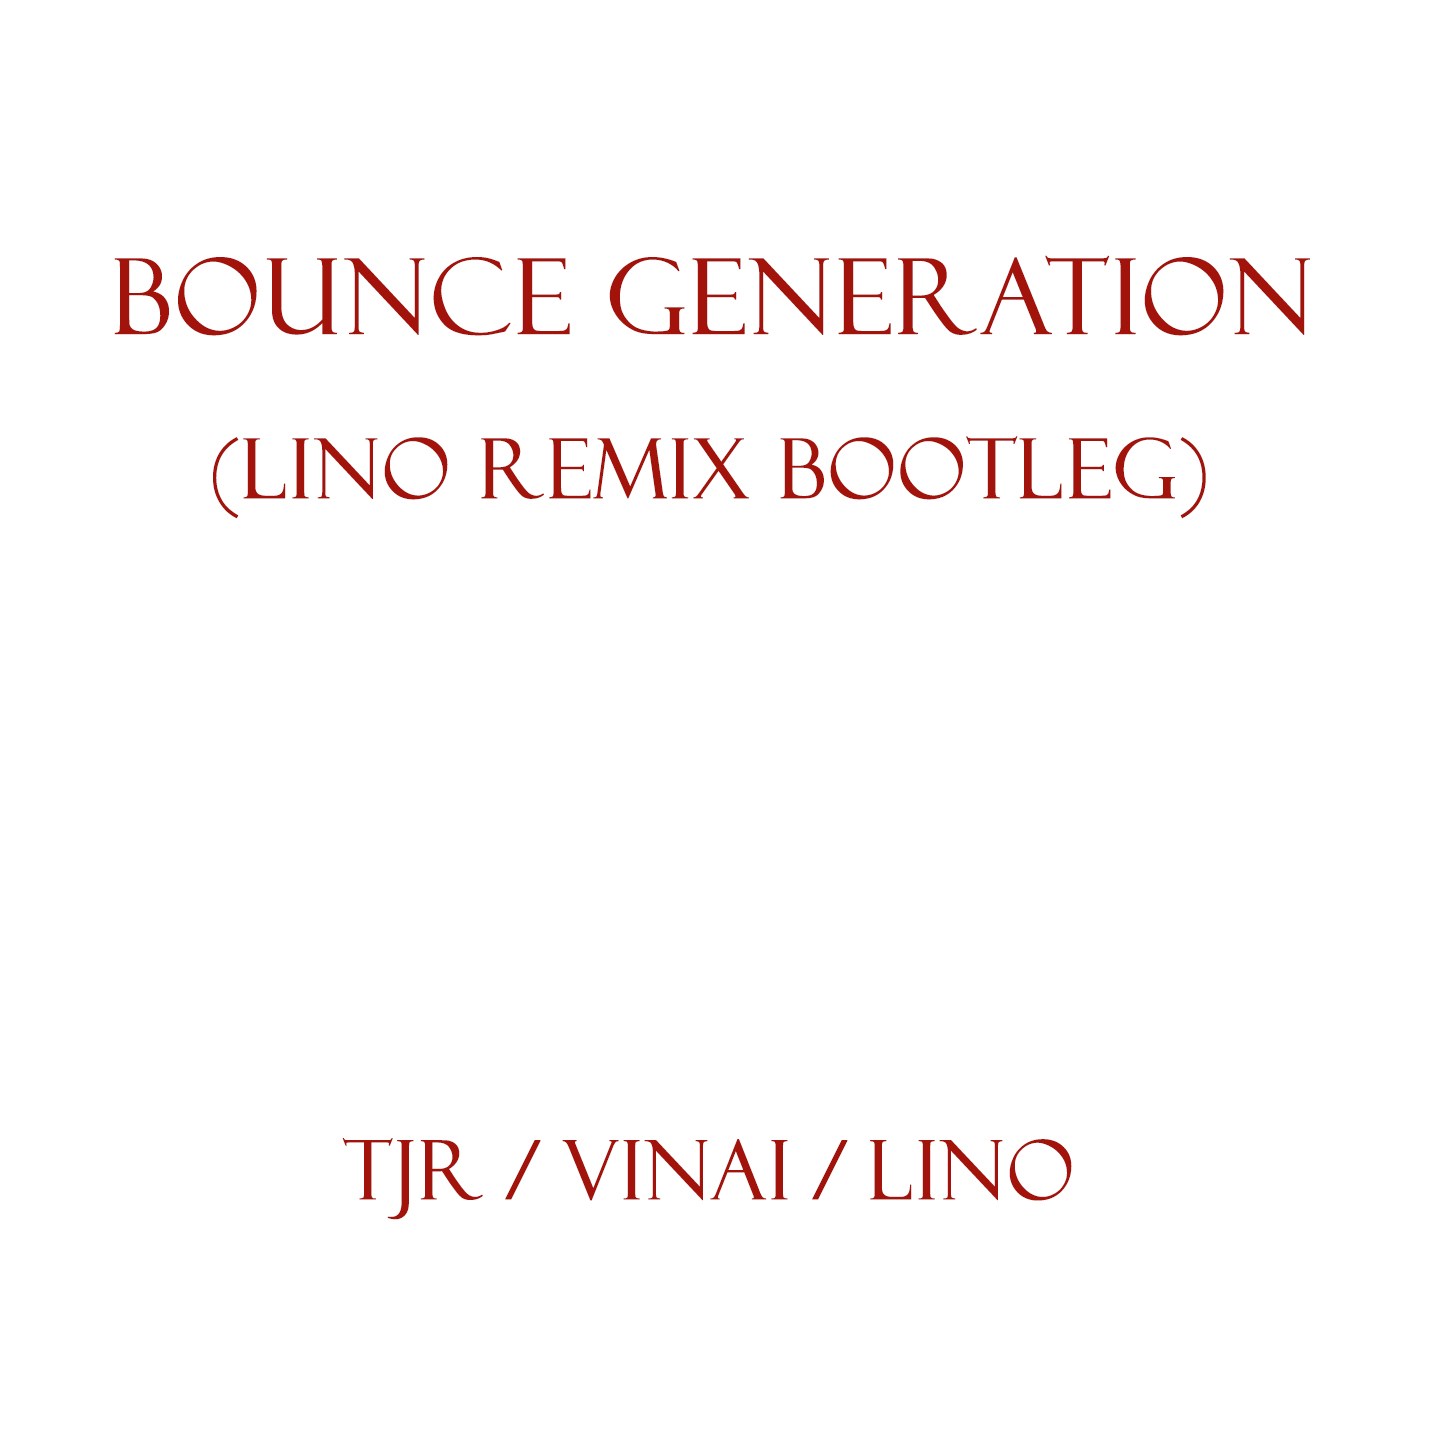 bootleg lino.JPG : TJR, VINAI, Lino - Bounce Generation (Lino Remix Bootleg)